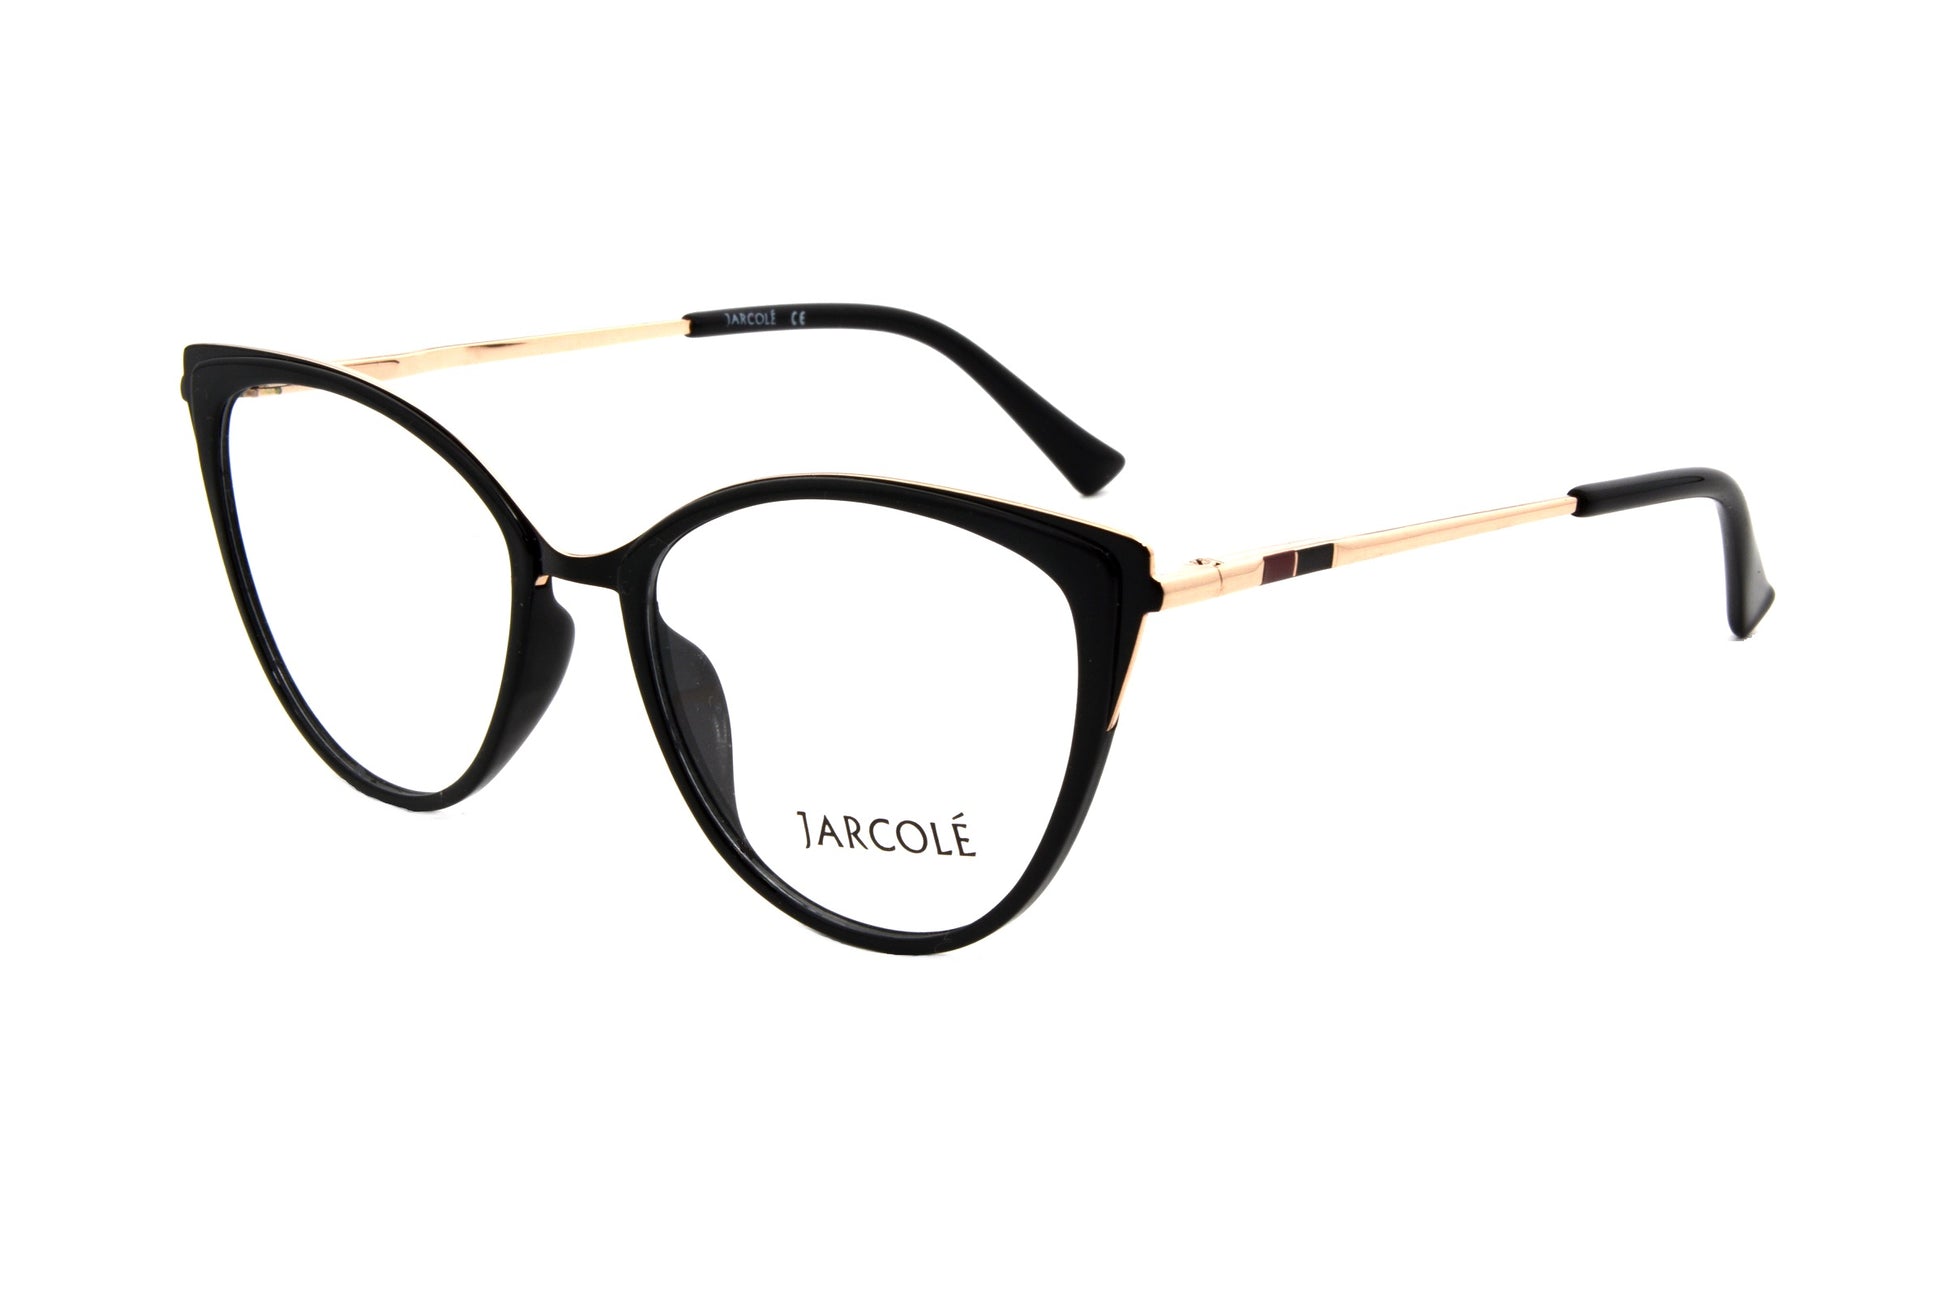 Jarcole eyewear T821 C1